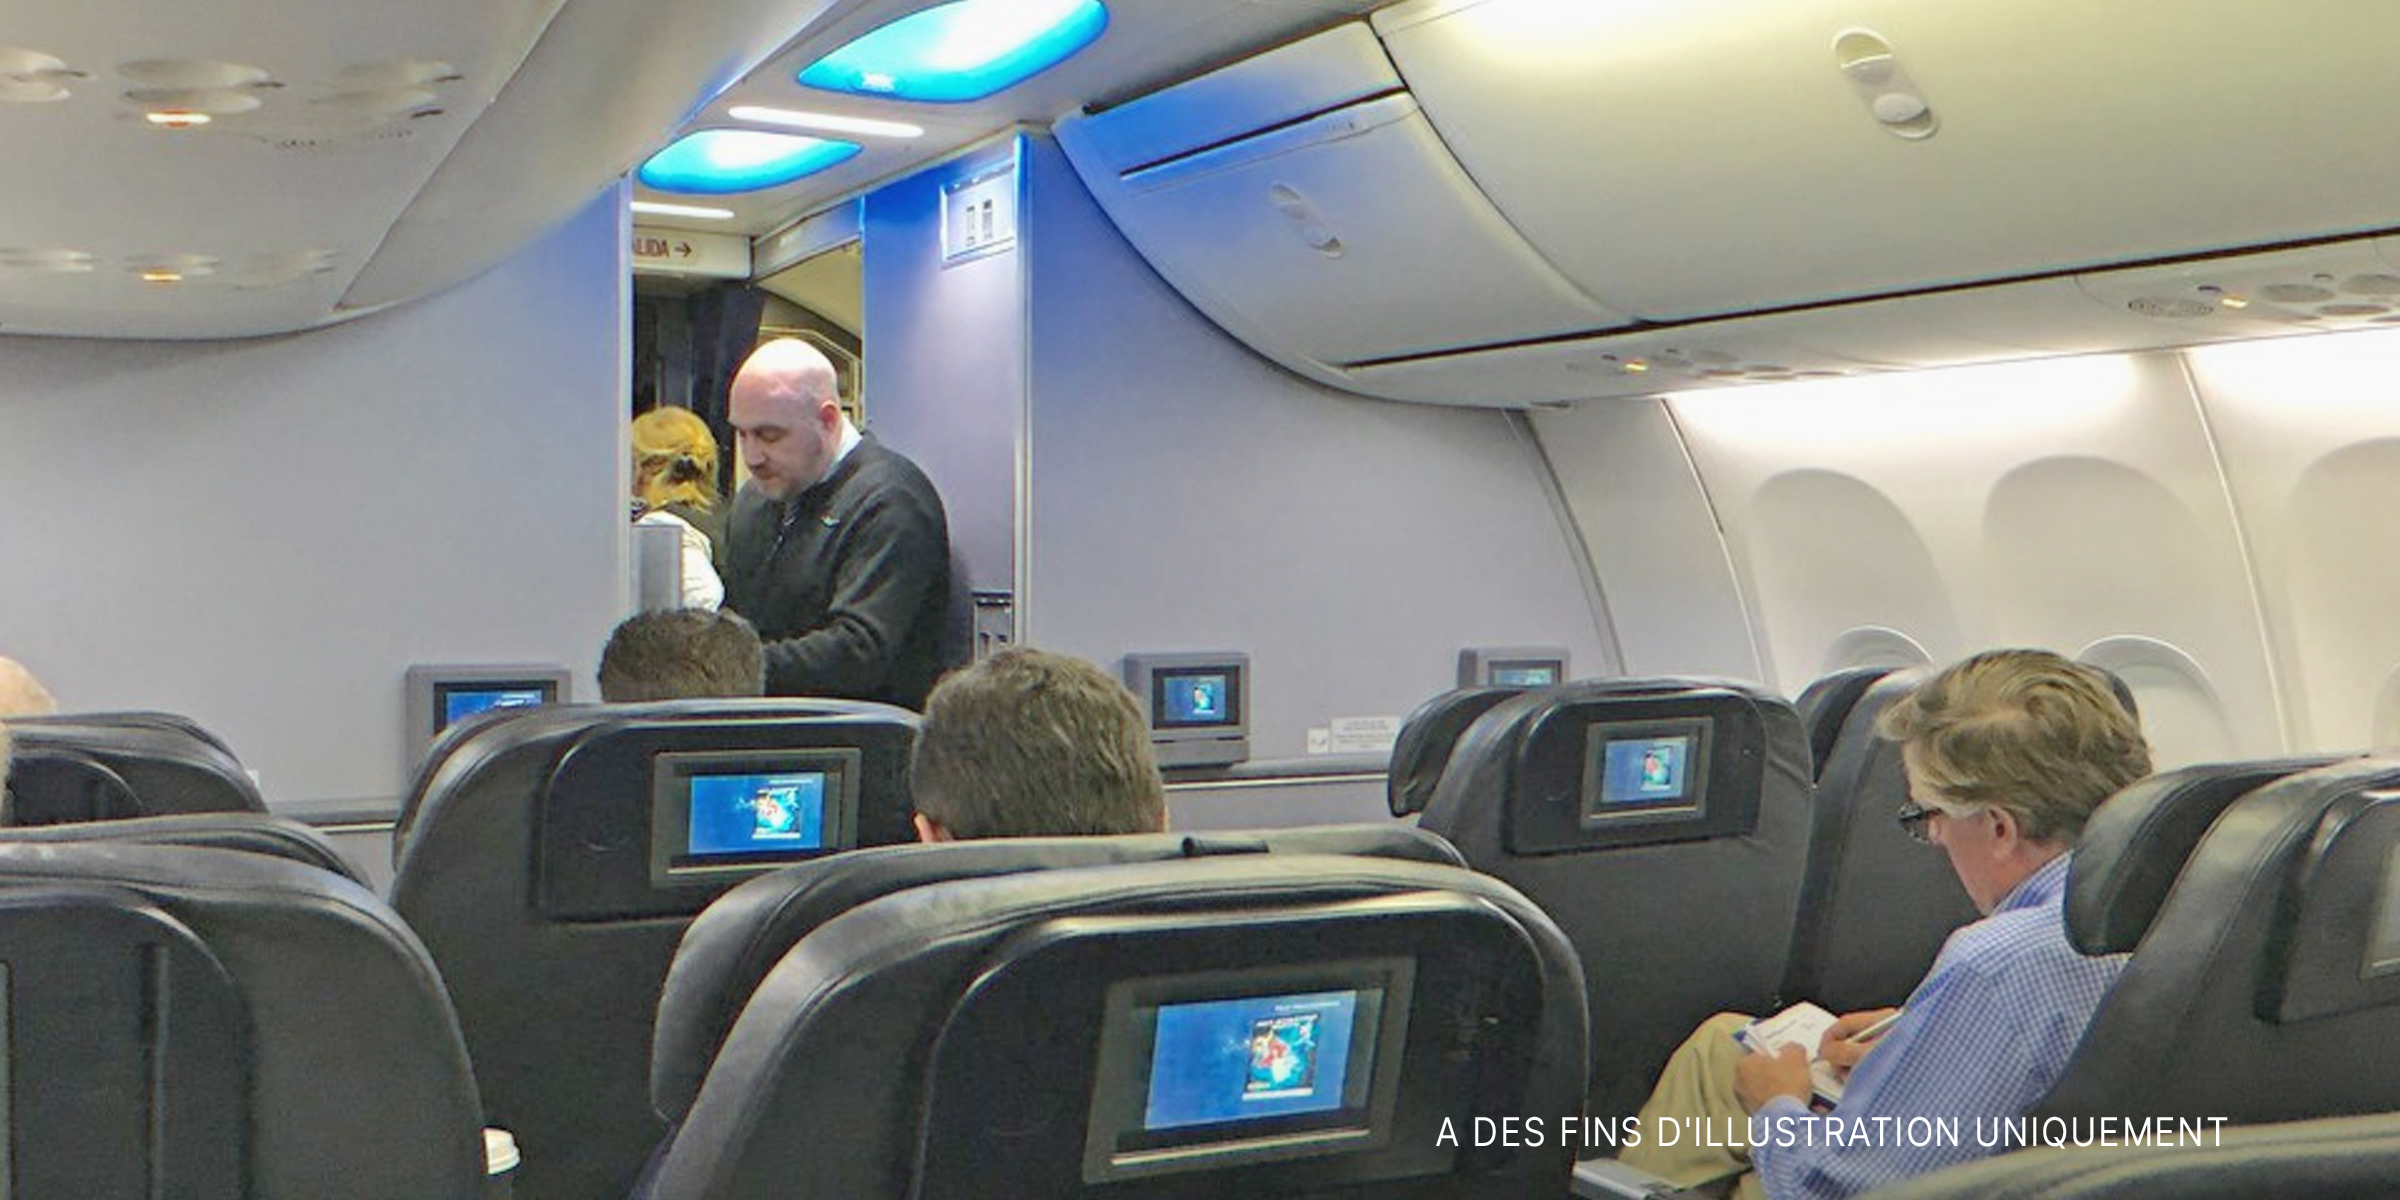 Un membre de l'équipage dans un avion | Source : Flickr.com/alan-light (CC BY 2.0)